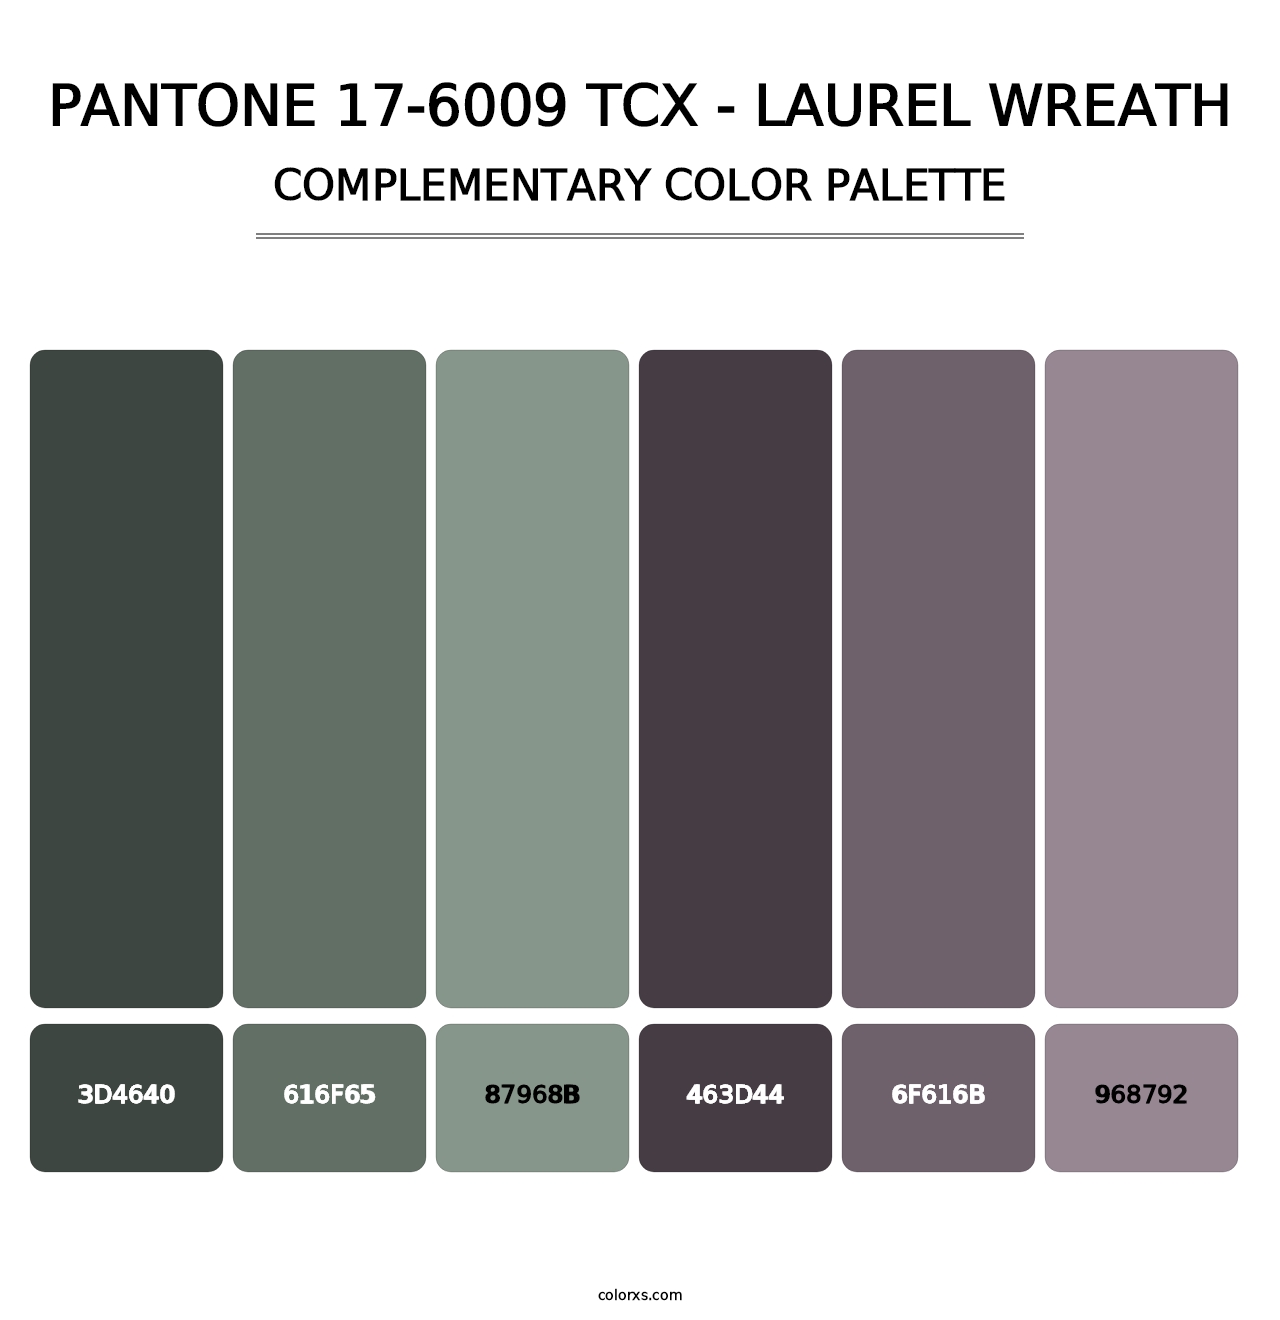 PANTONE 17-6009 TCX - Laurel Wreath - Complementary Color Palette